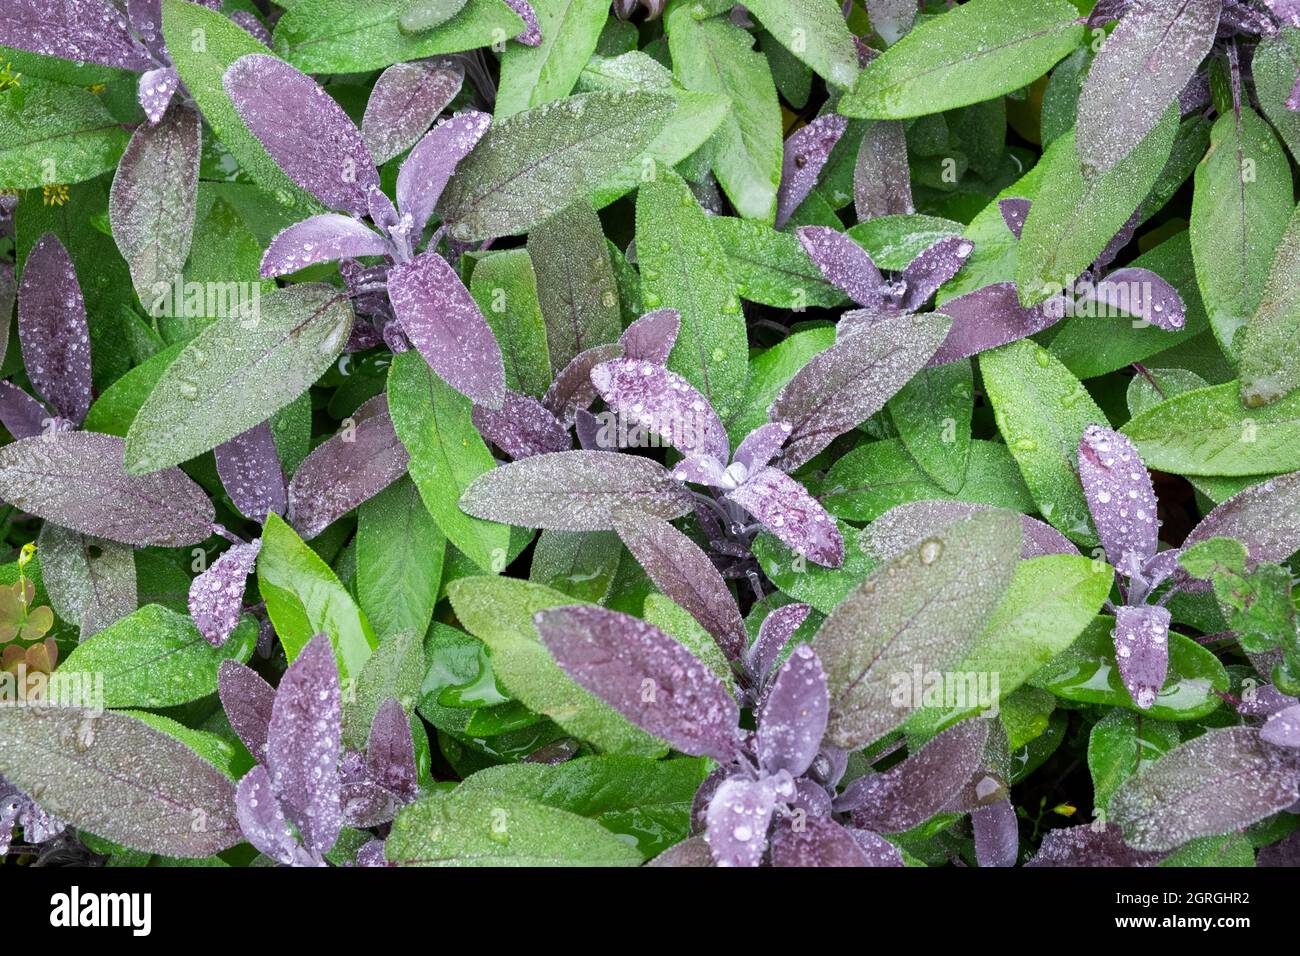 Salvia officinalis Purpurea violetter Salbei mit Wassertropfen Pflanze  wächst im Herbst in einem Kräutergarten September Carmarthenshire Wales UK  KATHY DEWITT Stockfotografie - Alamy